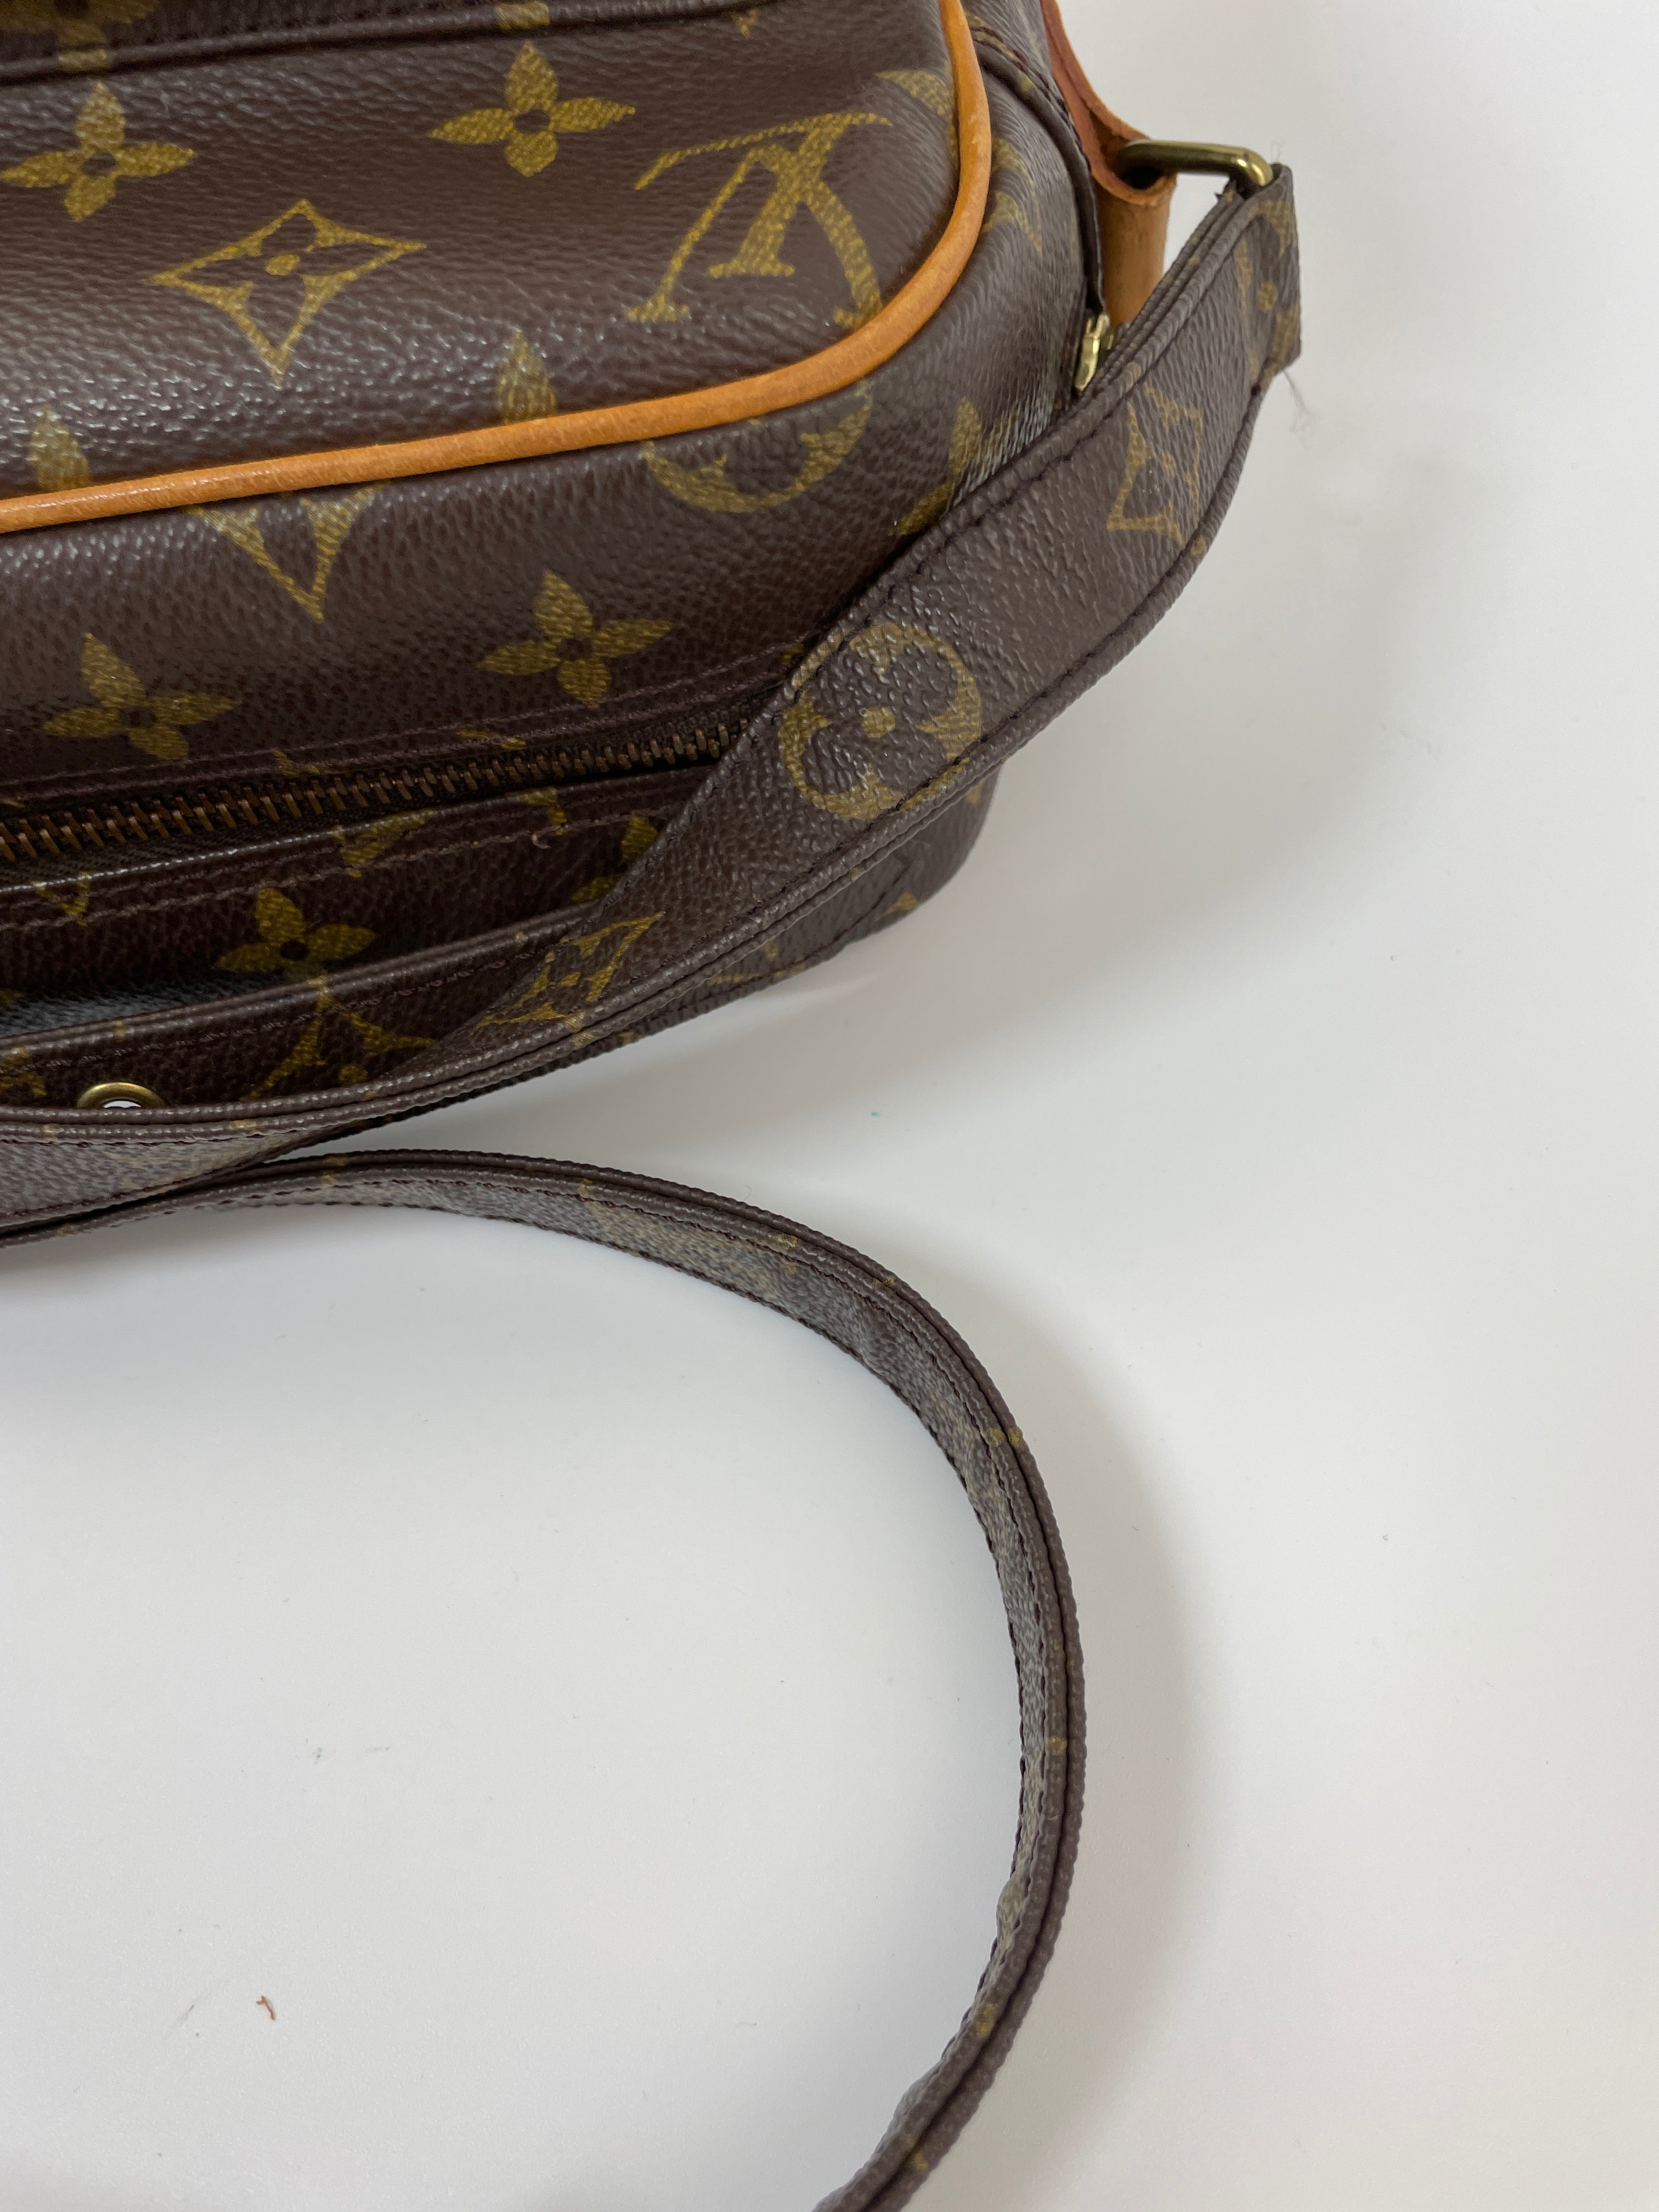 Louis Vuitton Sac Plat Tote Bag Used (6001)